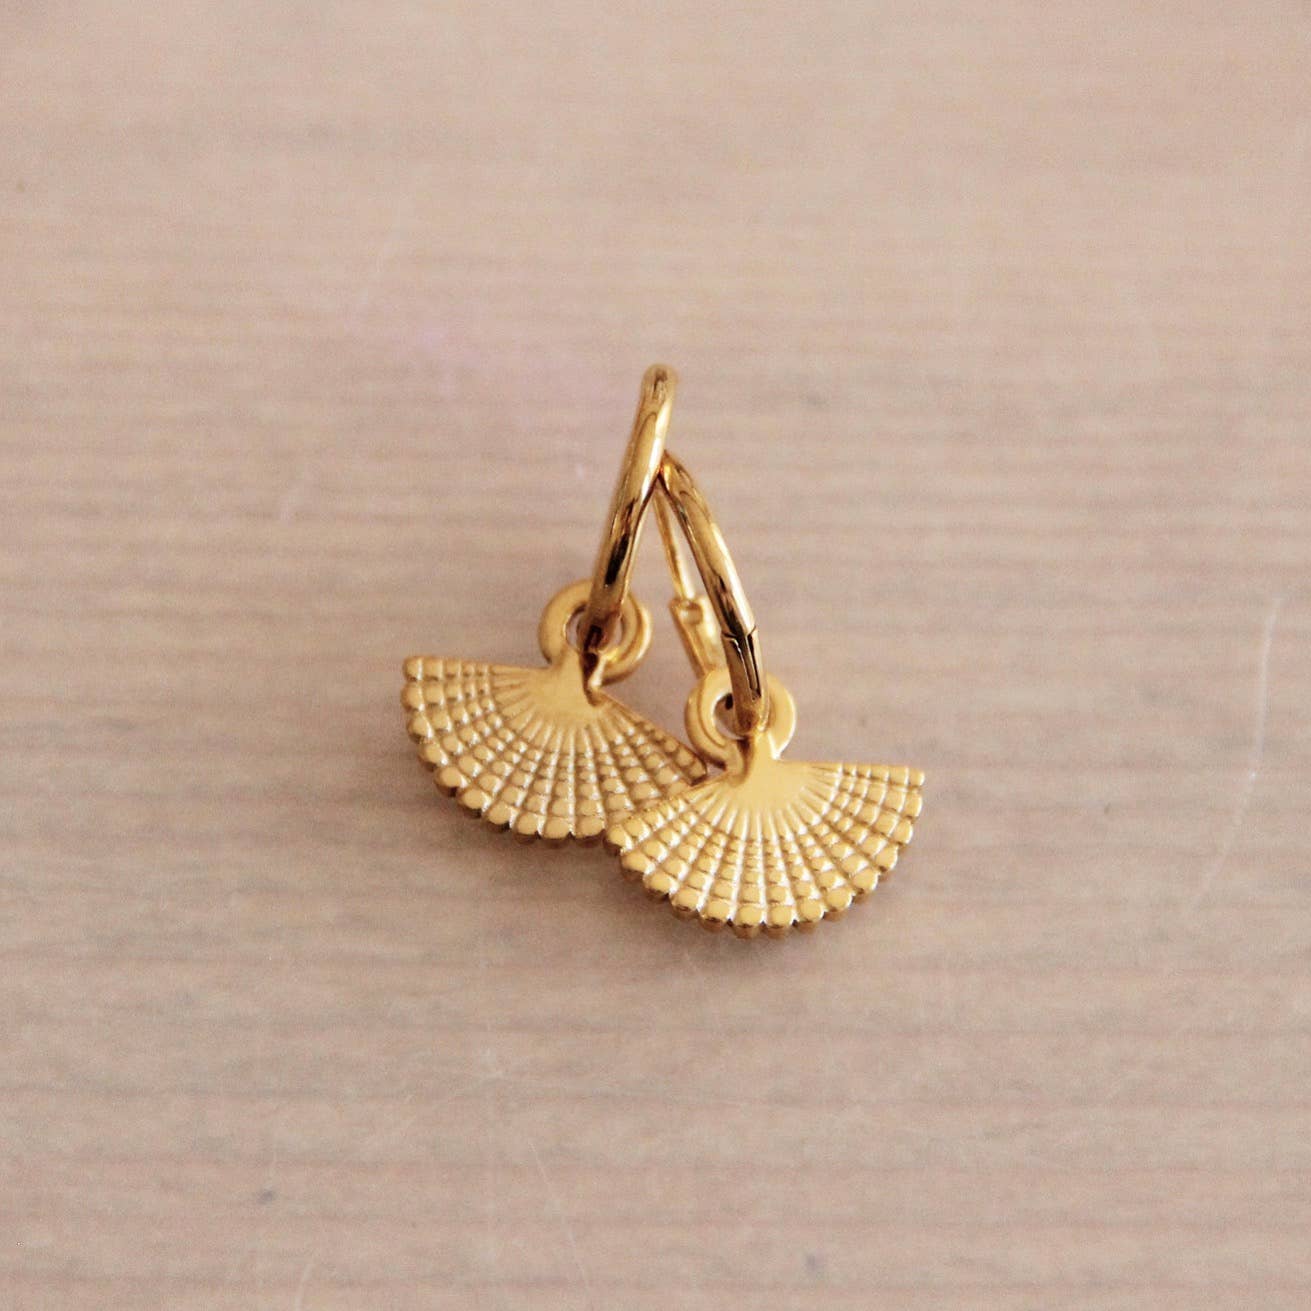 Stainless steel earrings with fan - gold